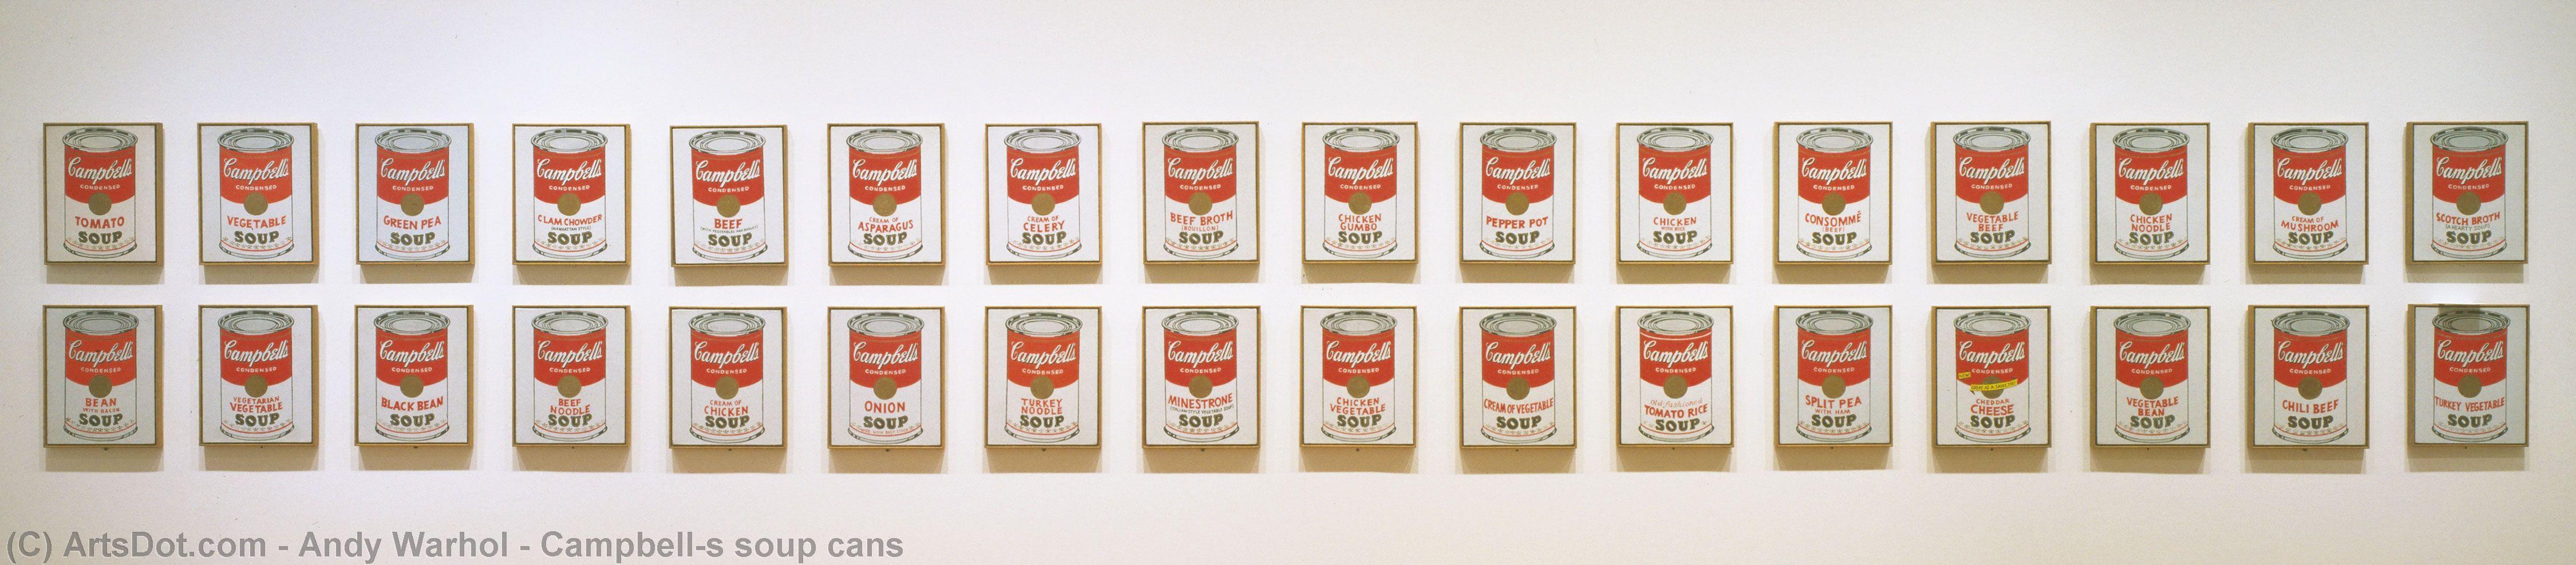 WikiOO.org - Енциклопедия за изящни изкуства - Живопис, Произведения на изкуството Andy Warhol - Campbell's soup cans